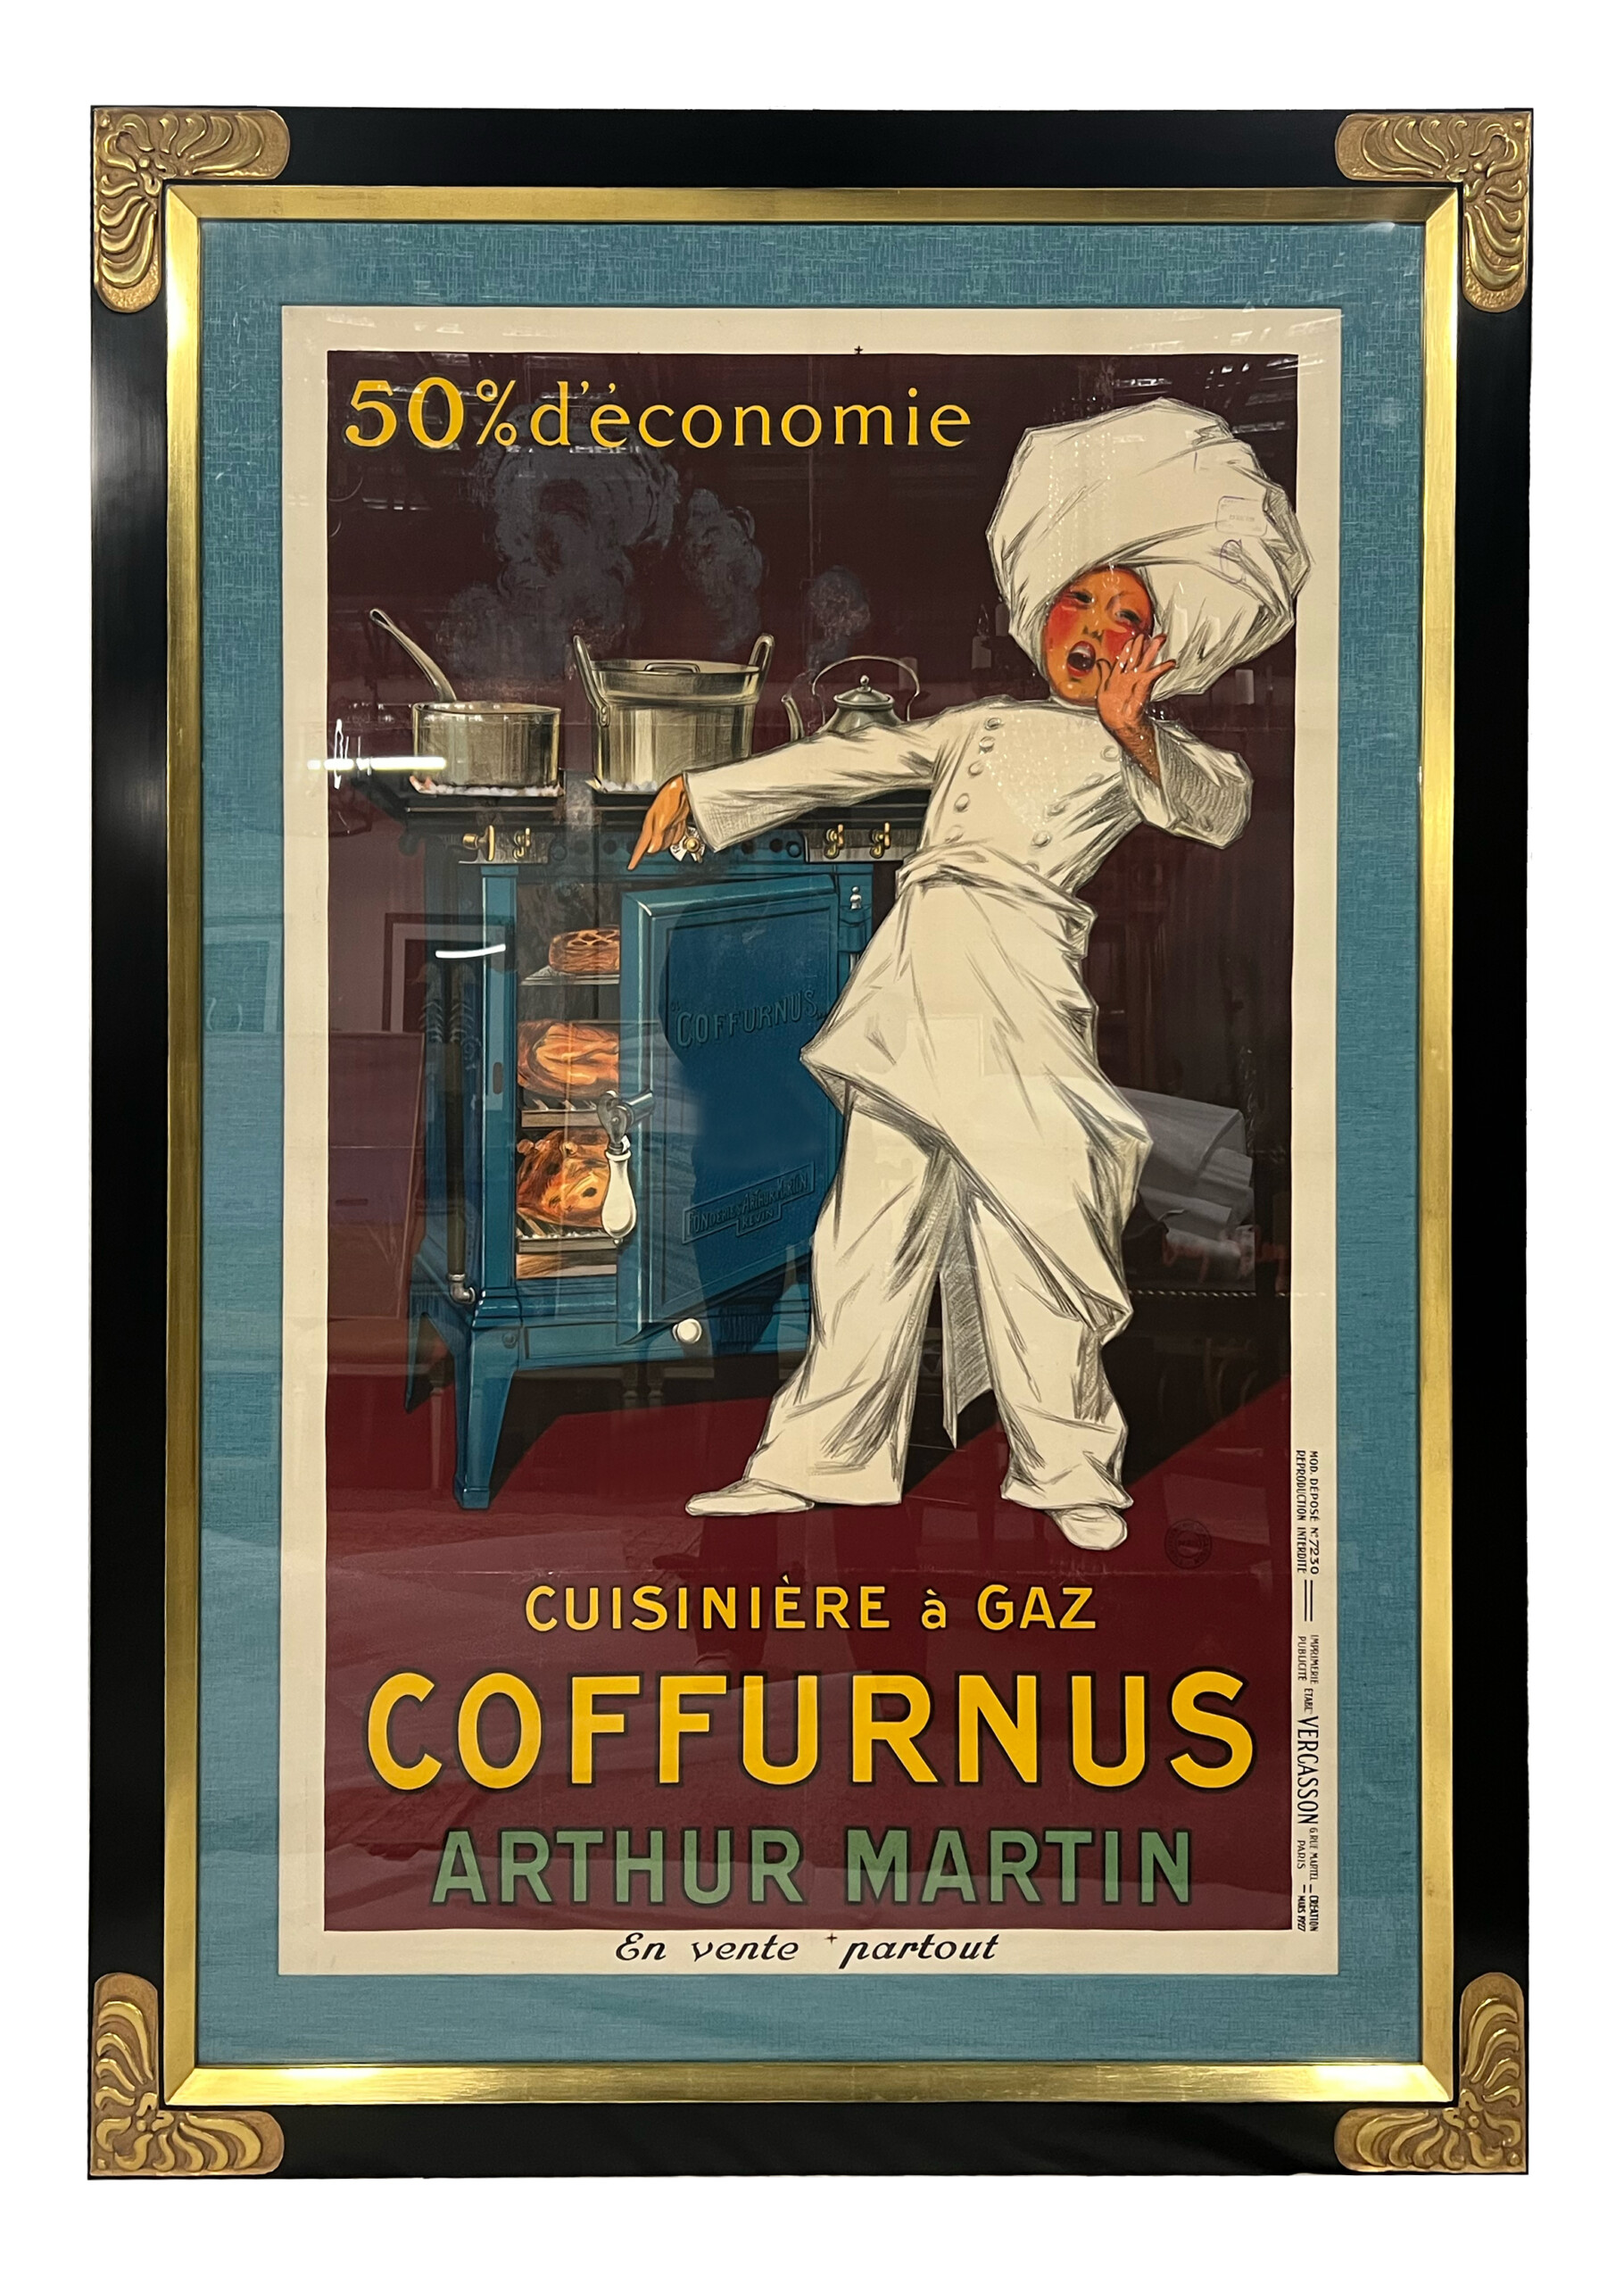 Vintage poster – Baudin, la cuisinière des cuisinières – Galerie 1 2 3